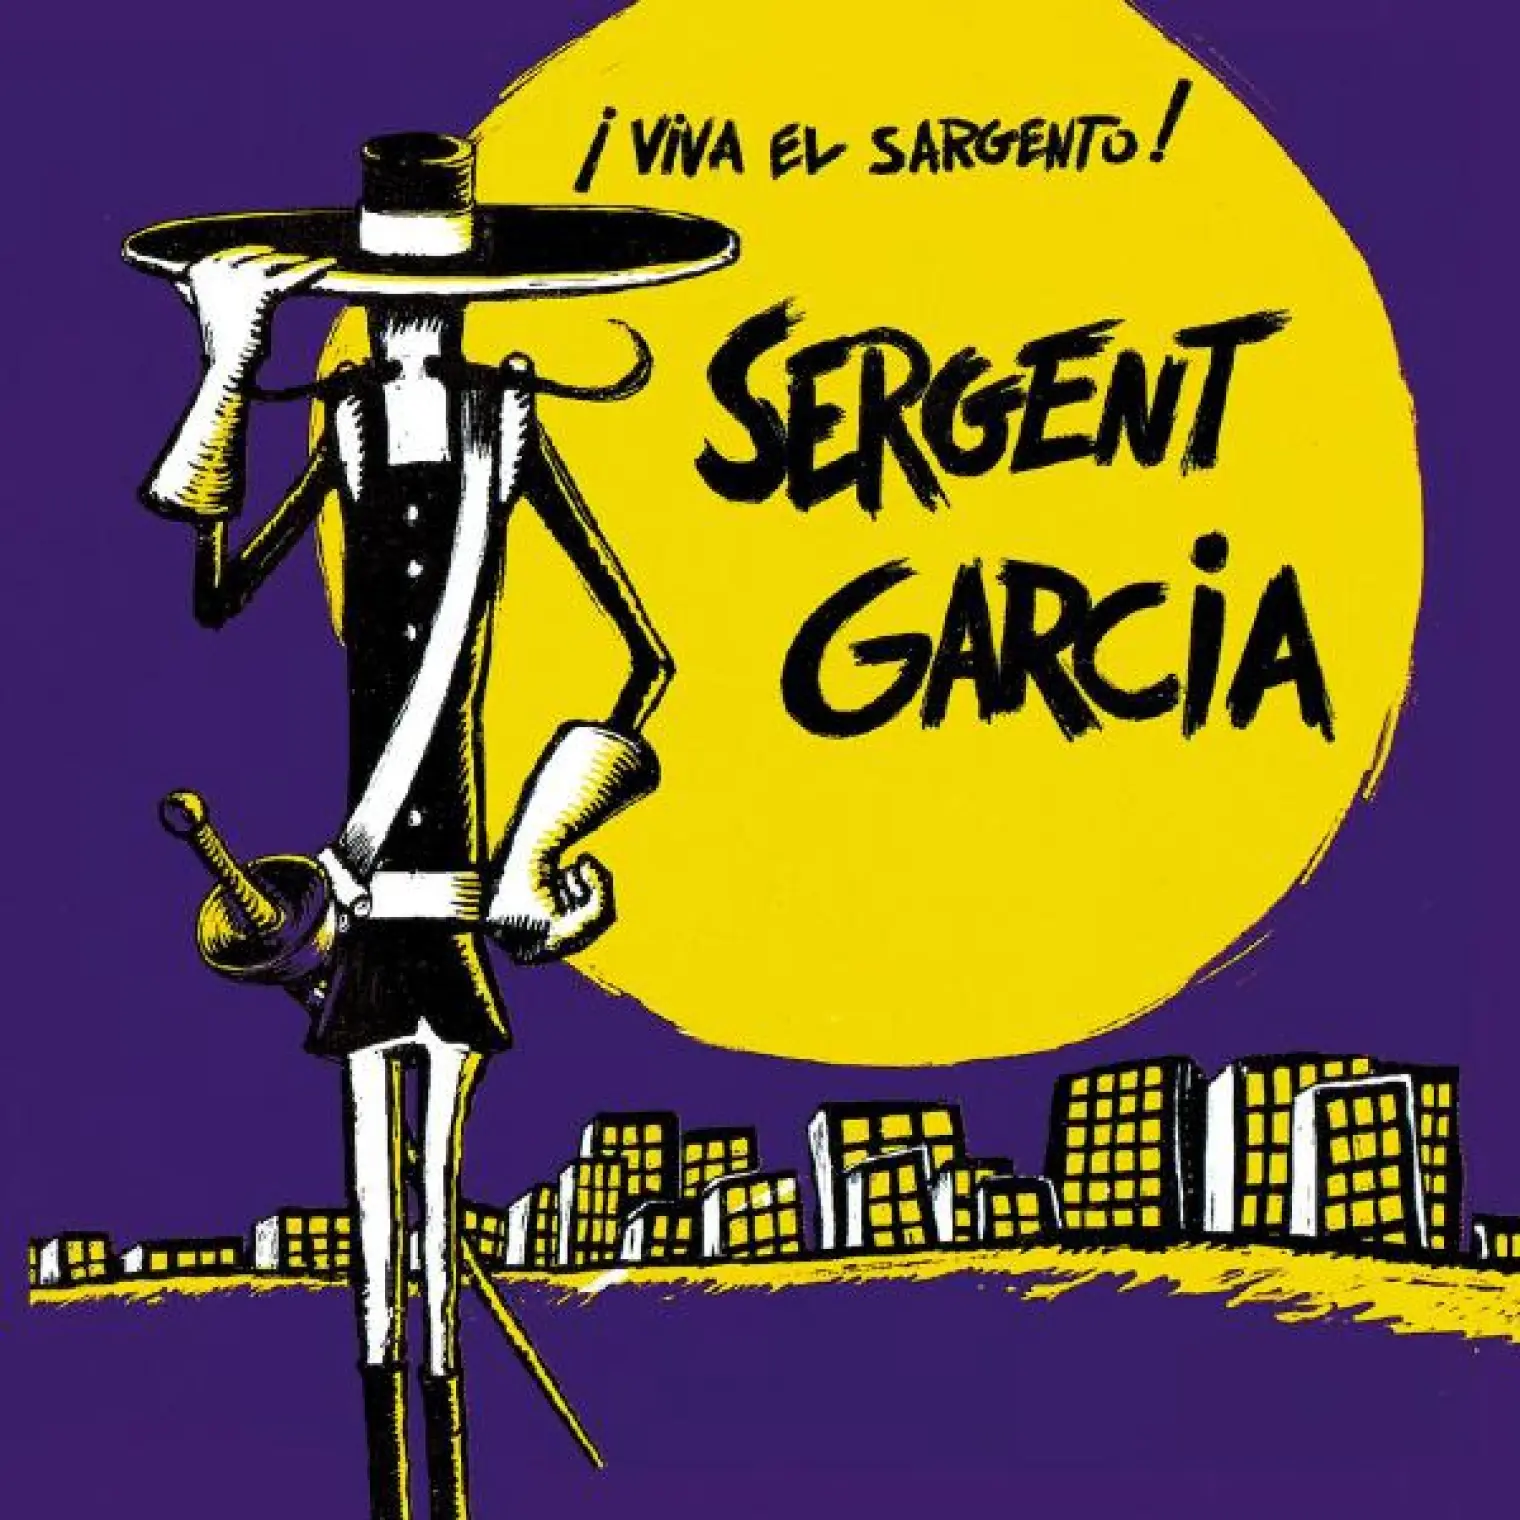 Viva El Sargento -  Sergent Garcia 